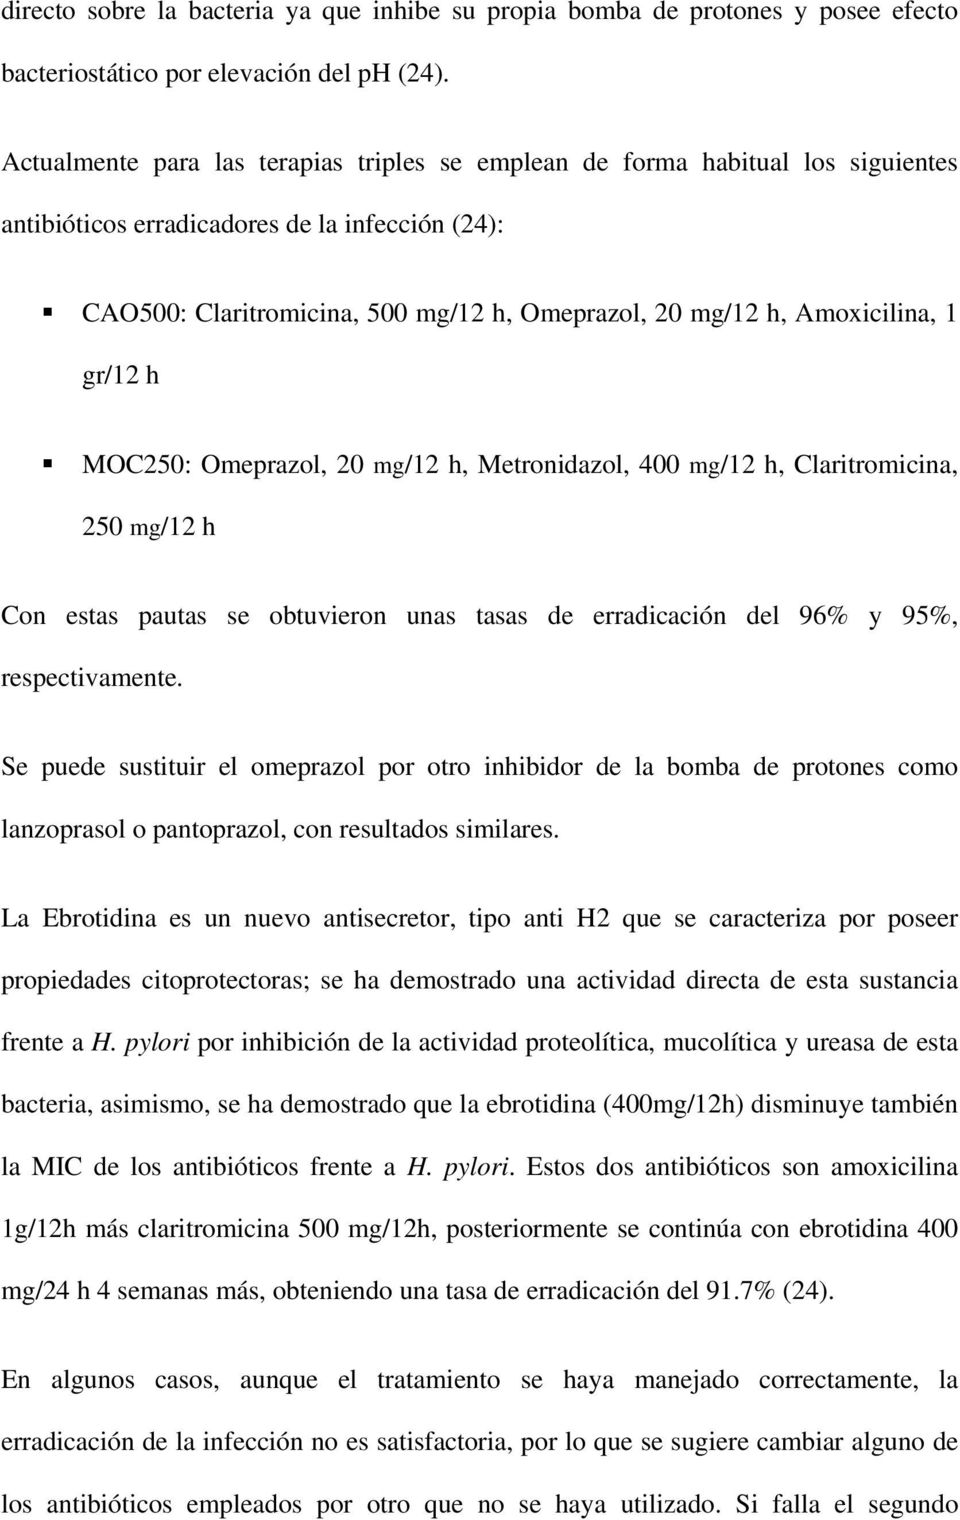 Amoxicilina, 1 gr/12 h MOC250: Omeprazol, 20 mg/12 h, Metronidazol, 400 mg/12 h, Claritromicina, 250 mg/12 h Con estas pautas se obtuvieron unas tasas de erradicación del 96% y 95%, respectivamente.